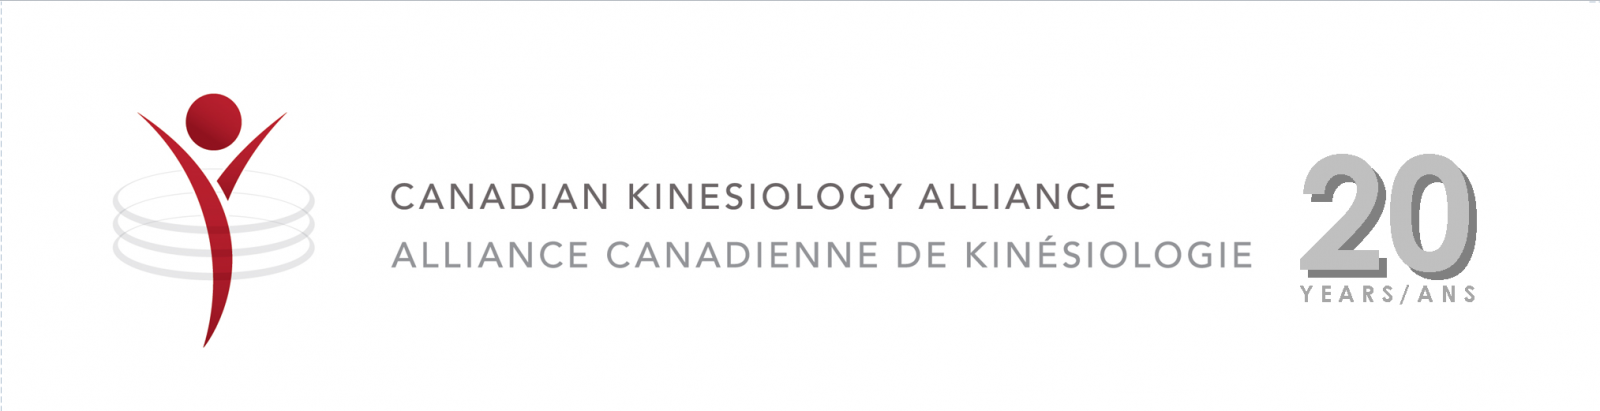 Alliance Canadienne d Kinésiologie